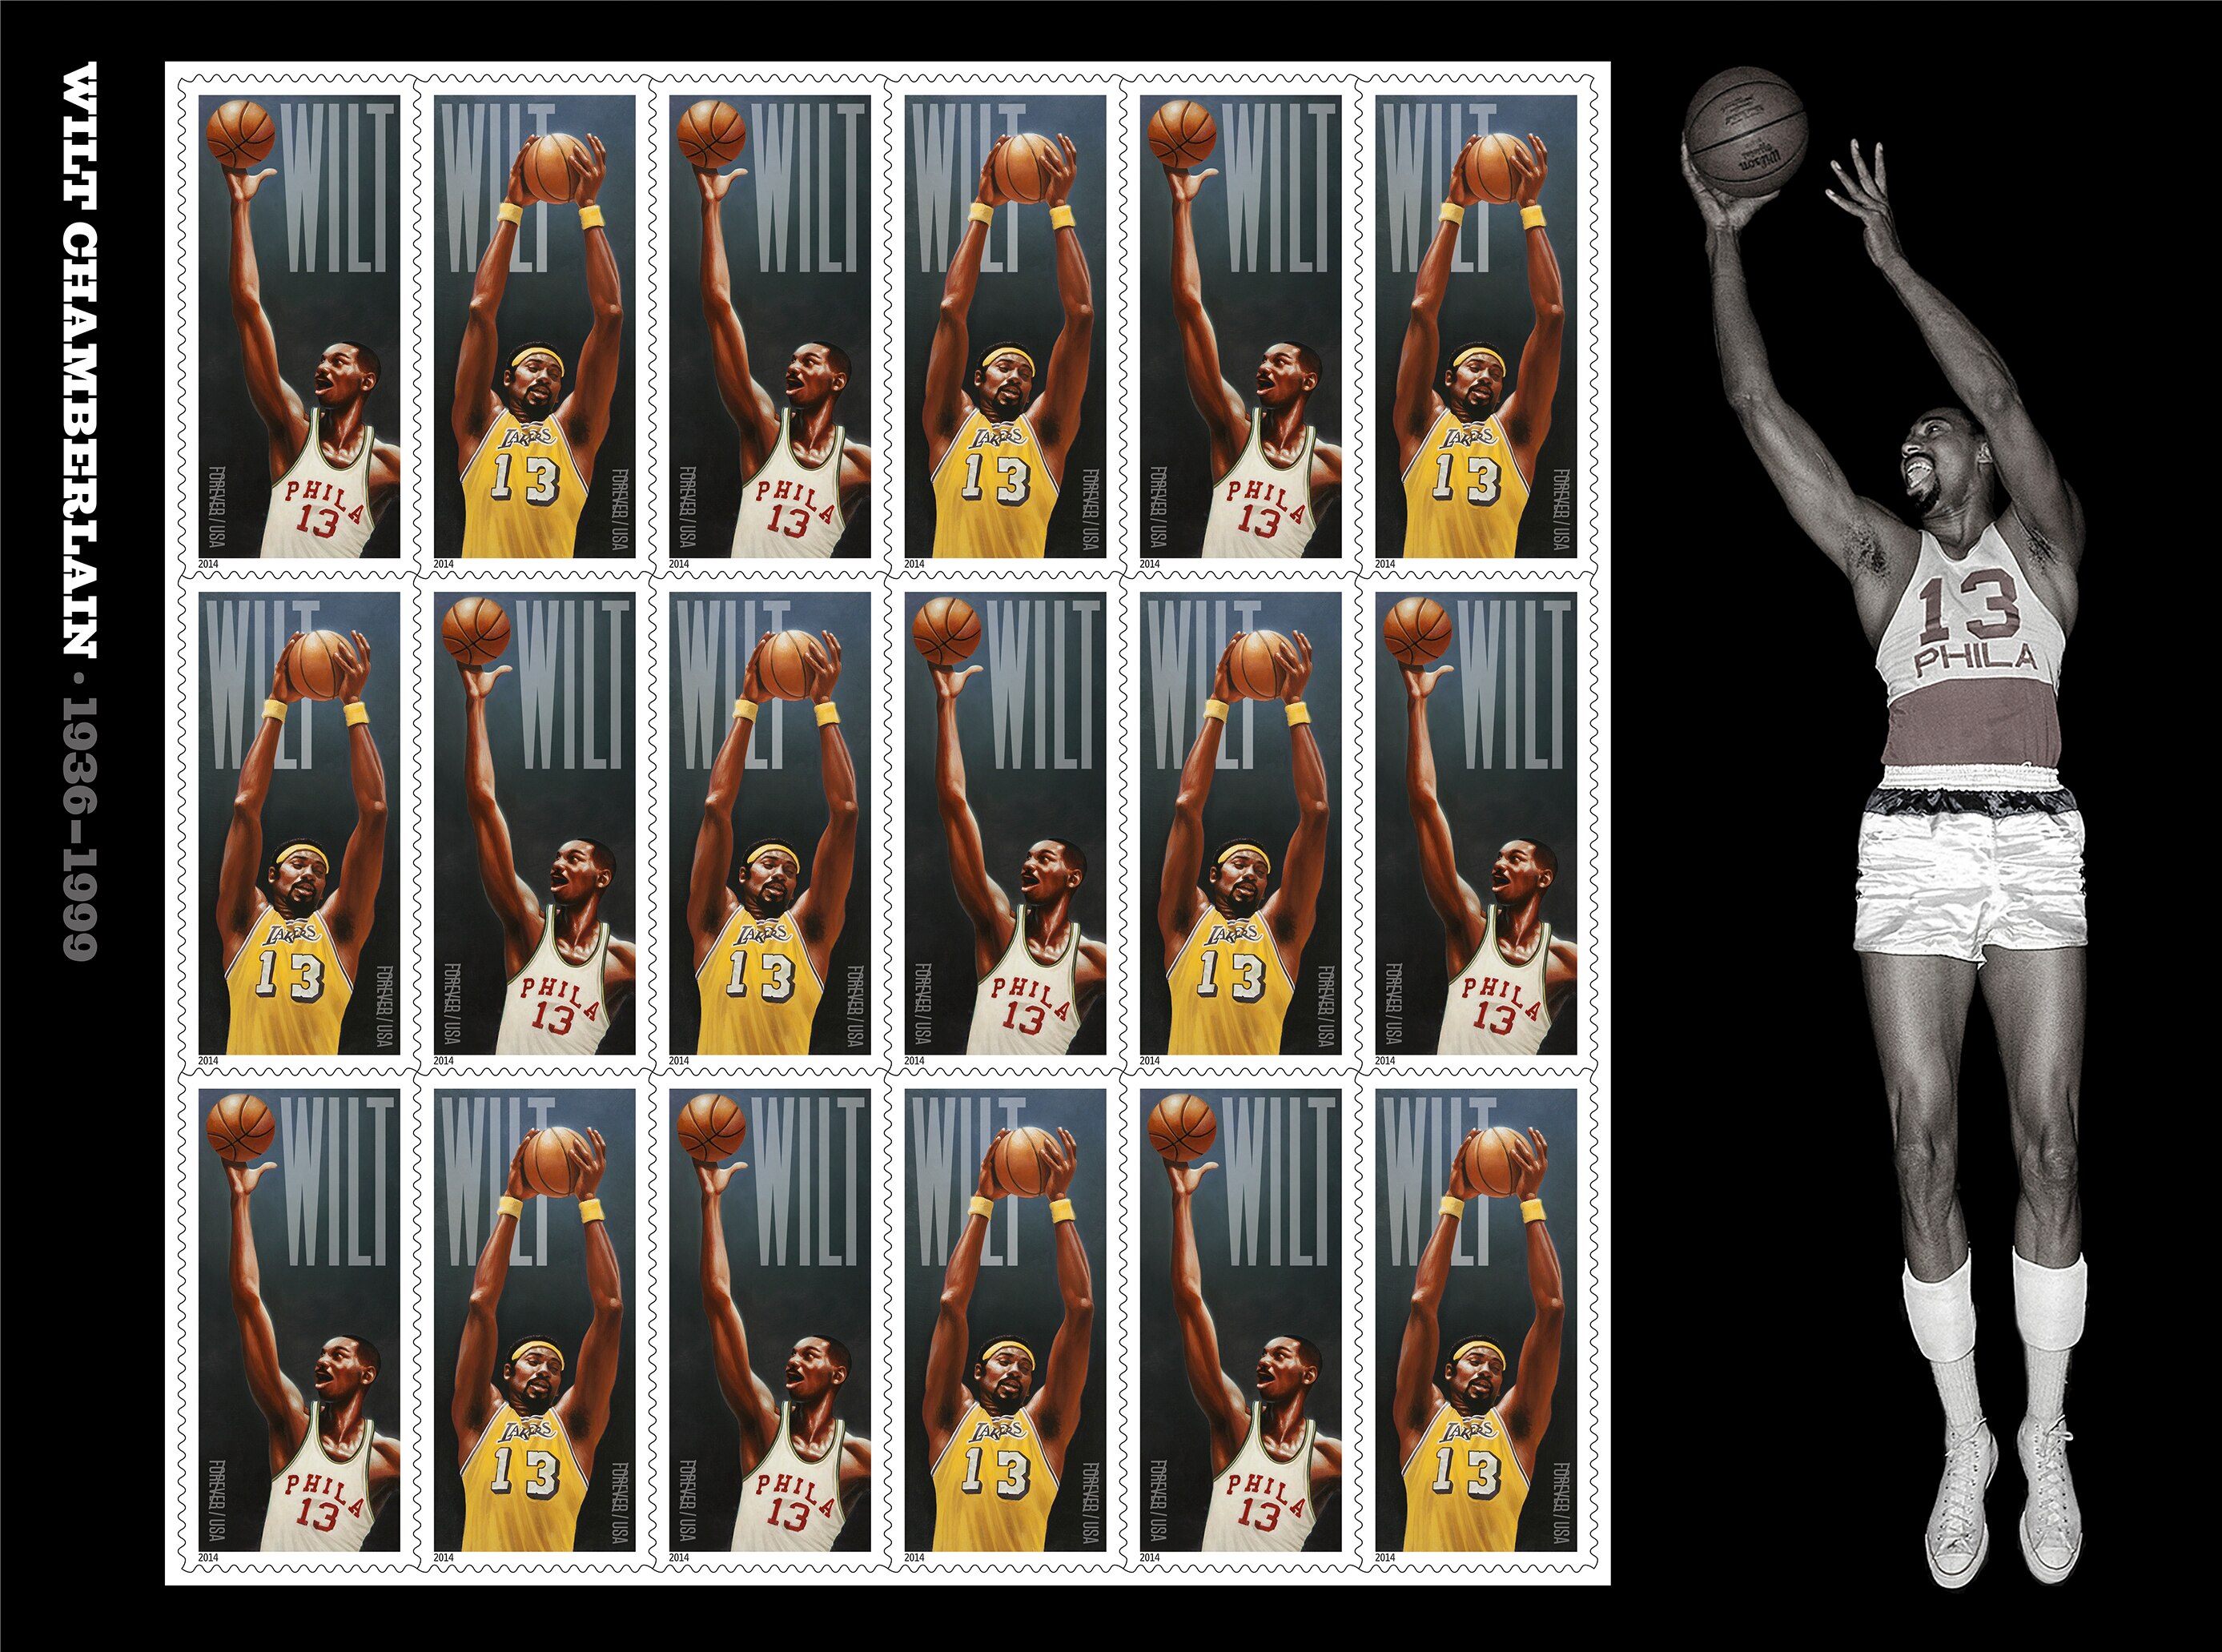 Sexto maior cestinha da história da NBA, Nowitzki brilha e